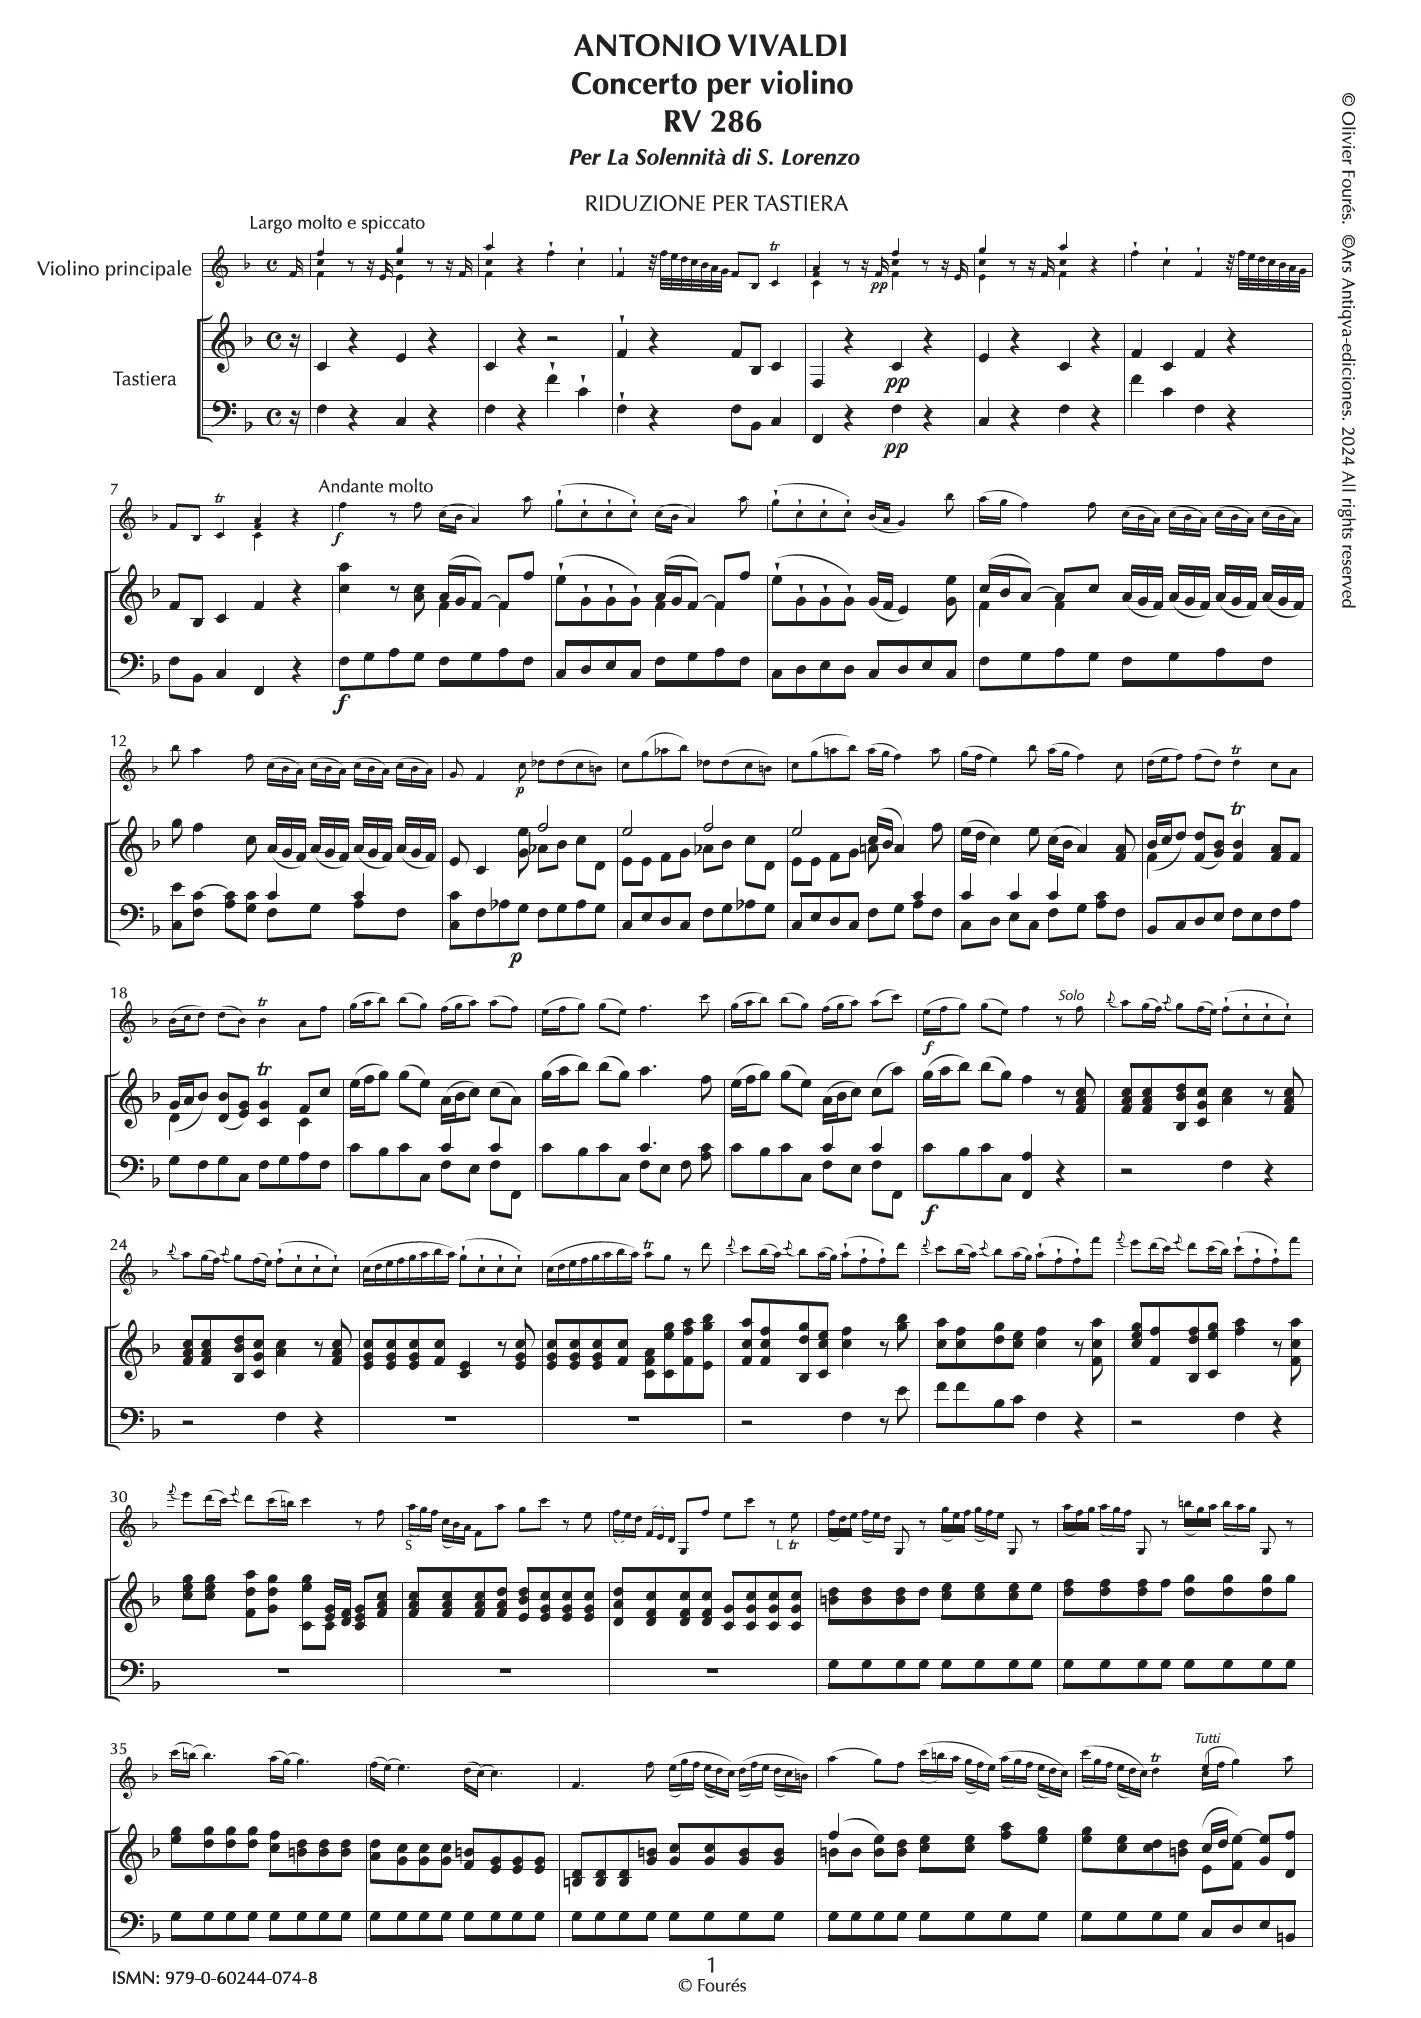 RV 286 Concerto per Violino in Fa maggiore -per la Solennità di San Lorenzo- per Anna Maria